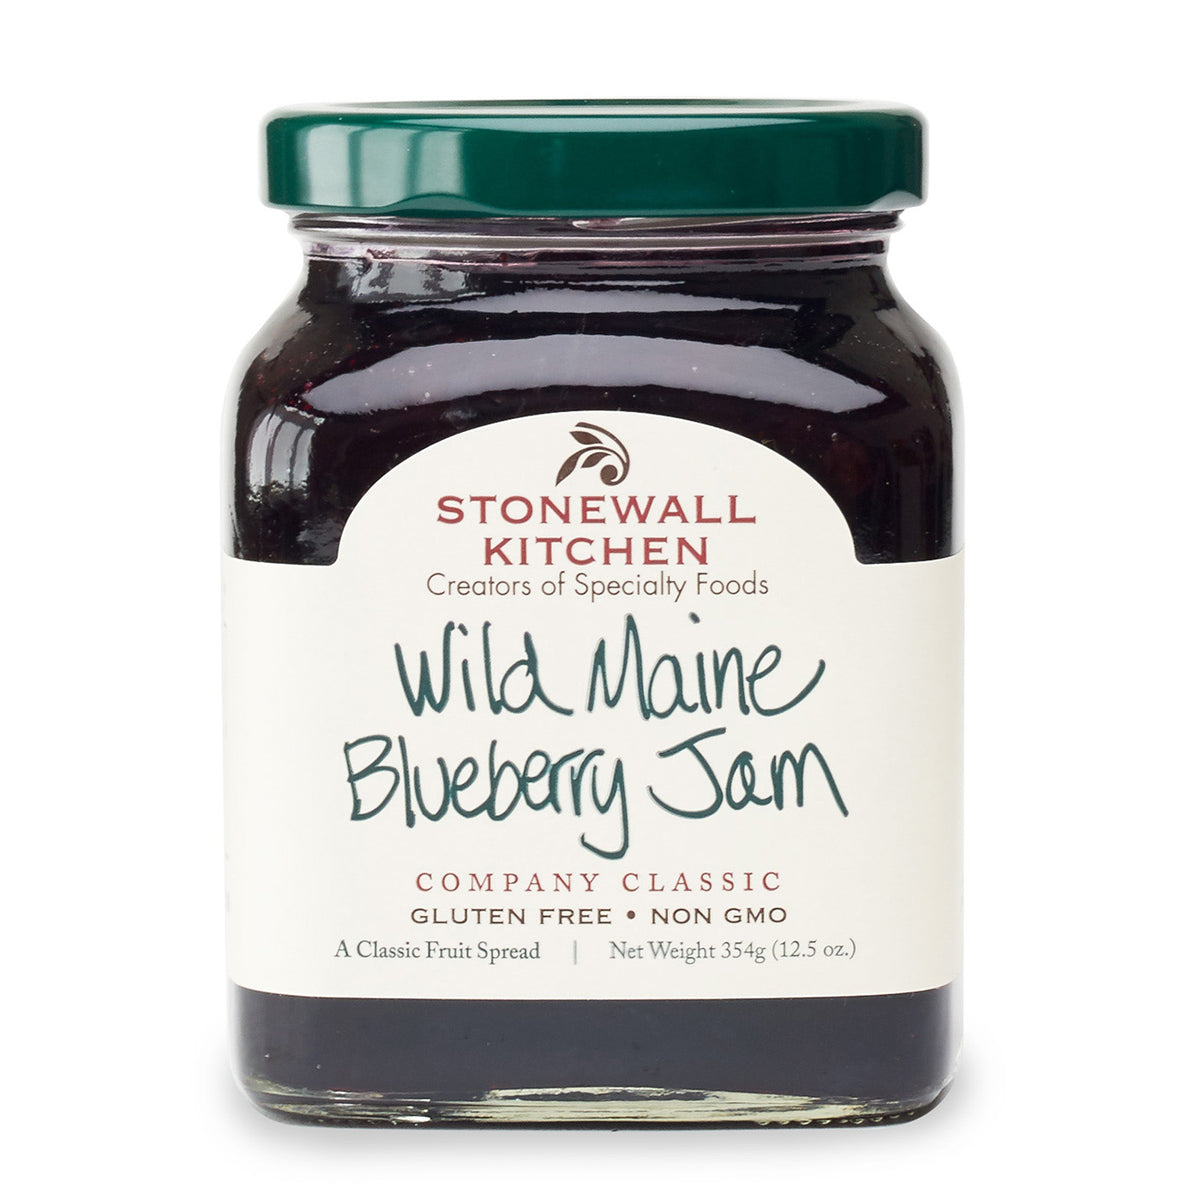 stonewall kitchen Wild maine Blueberry jam